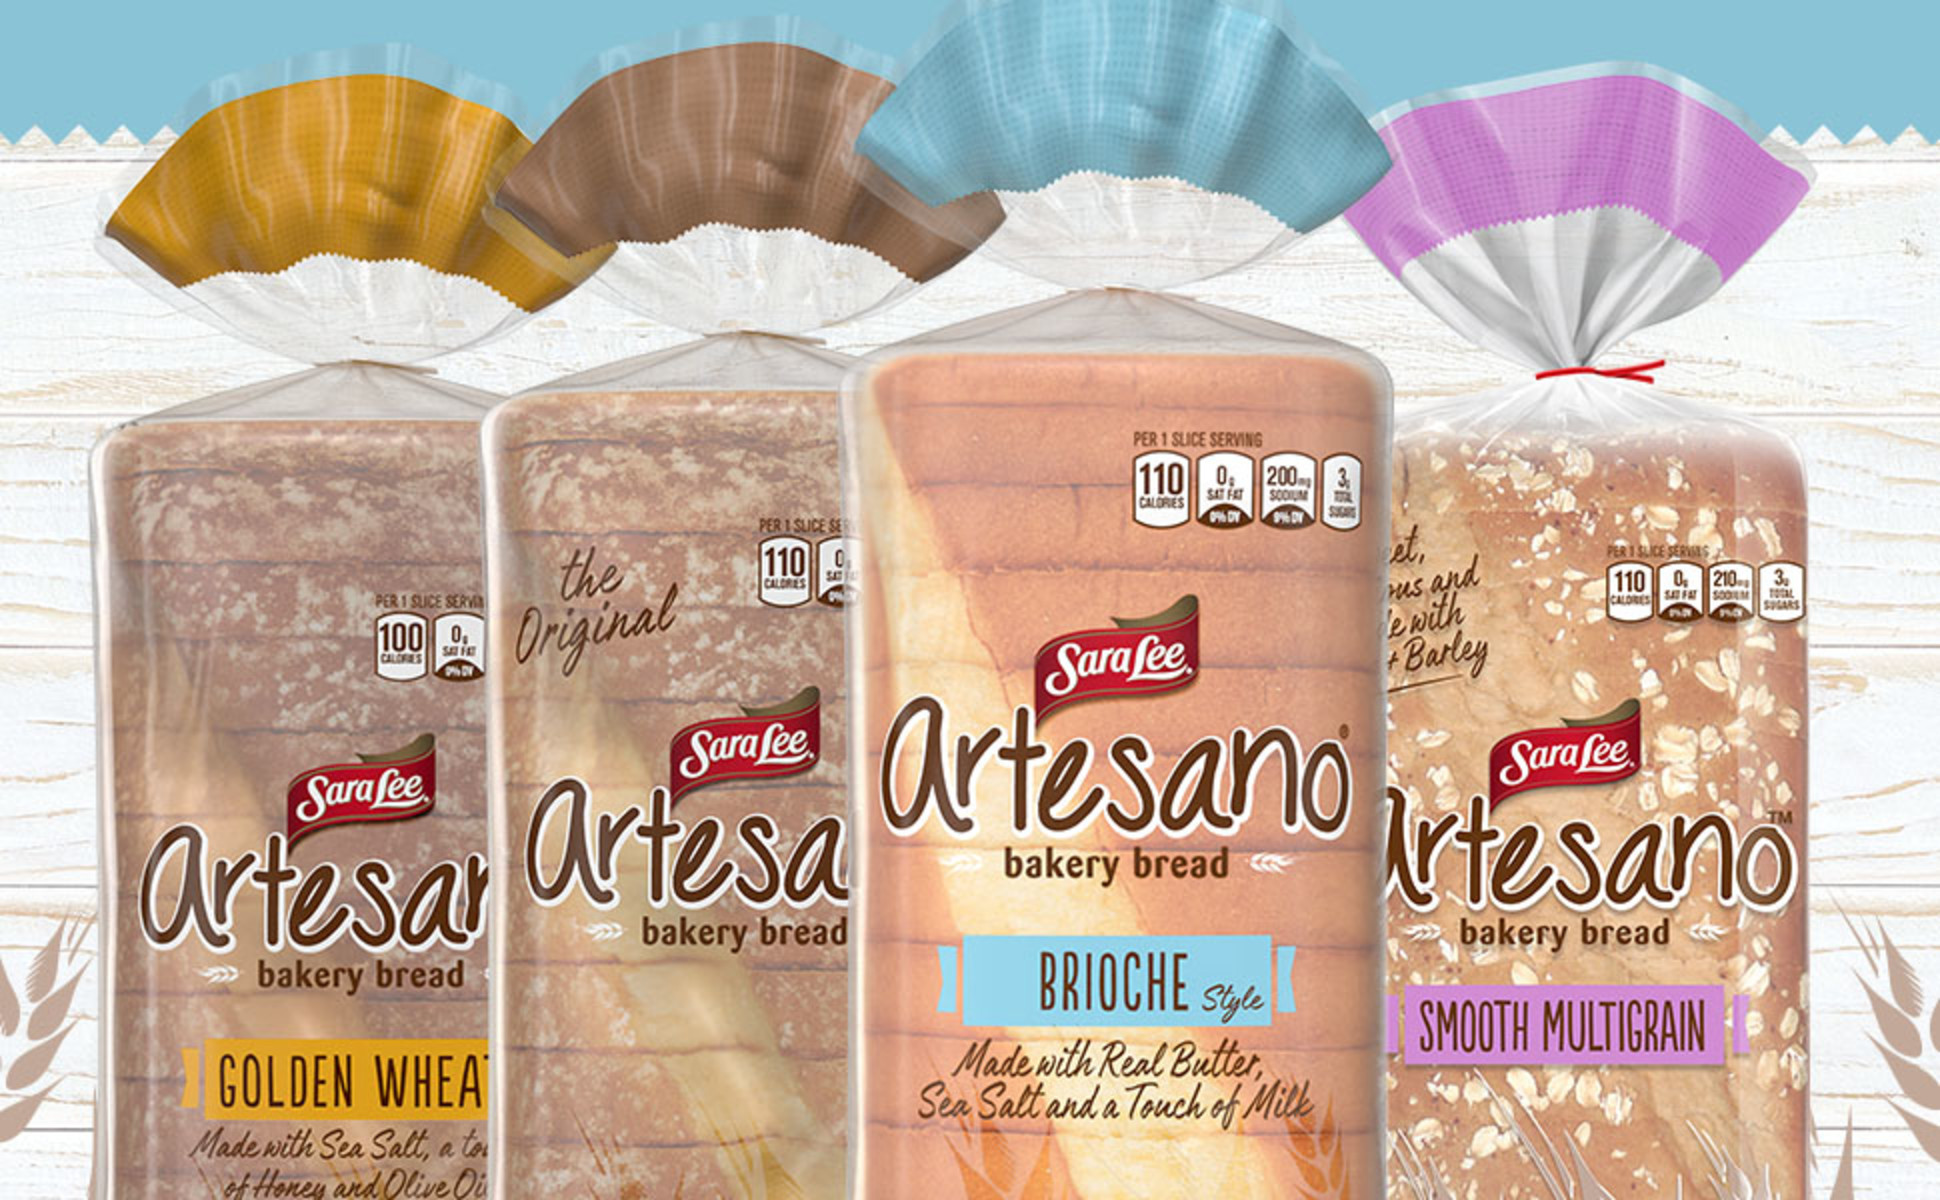 Sara Lee Artesano Brioche Bakery Bread, 20 oz - Baker's